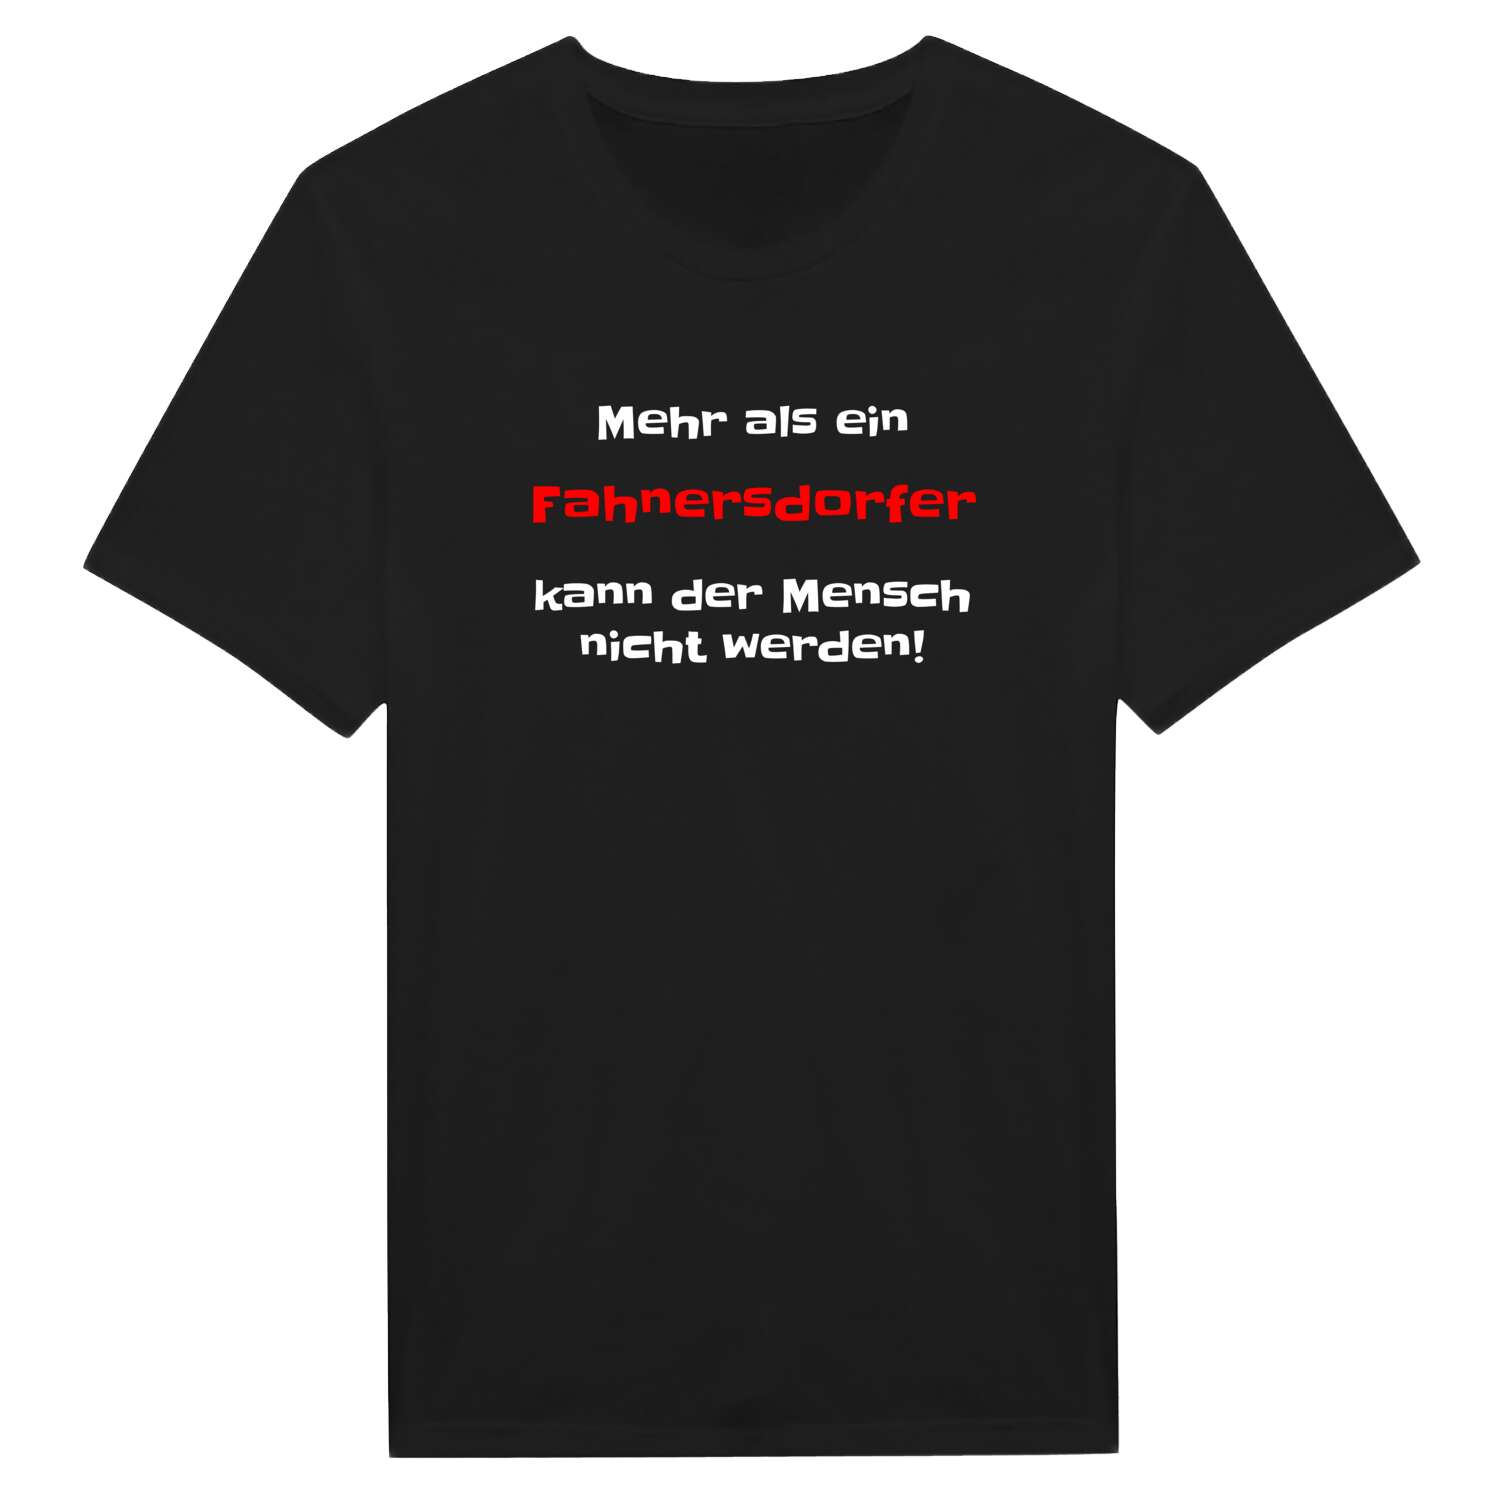 Fahnersdorf T-Shirt »Mehr als ein«